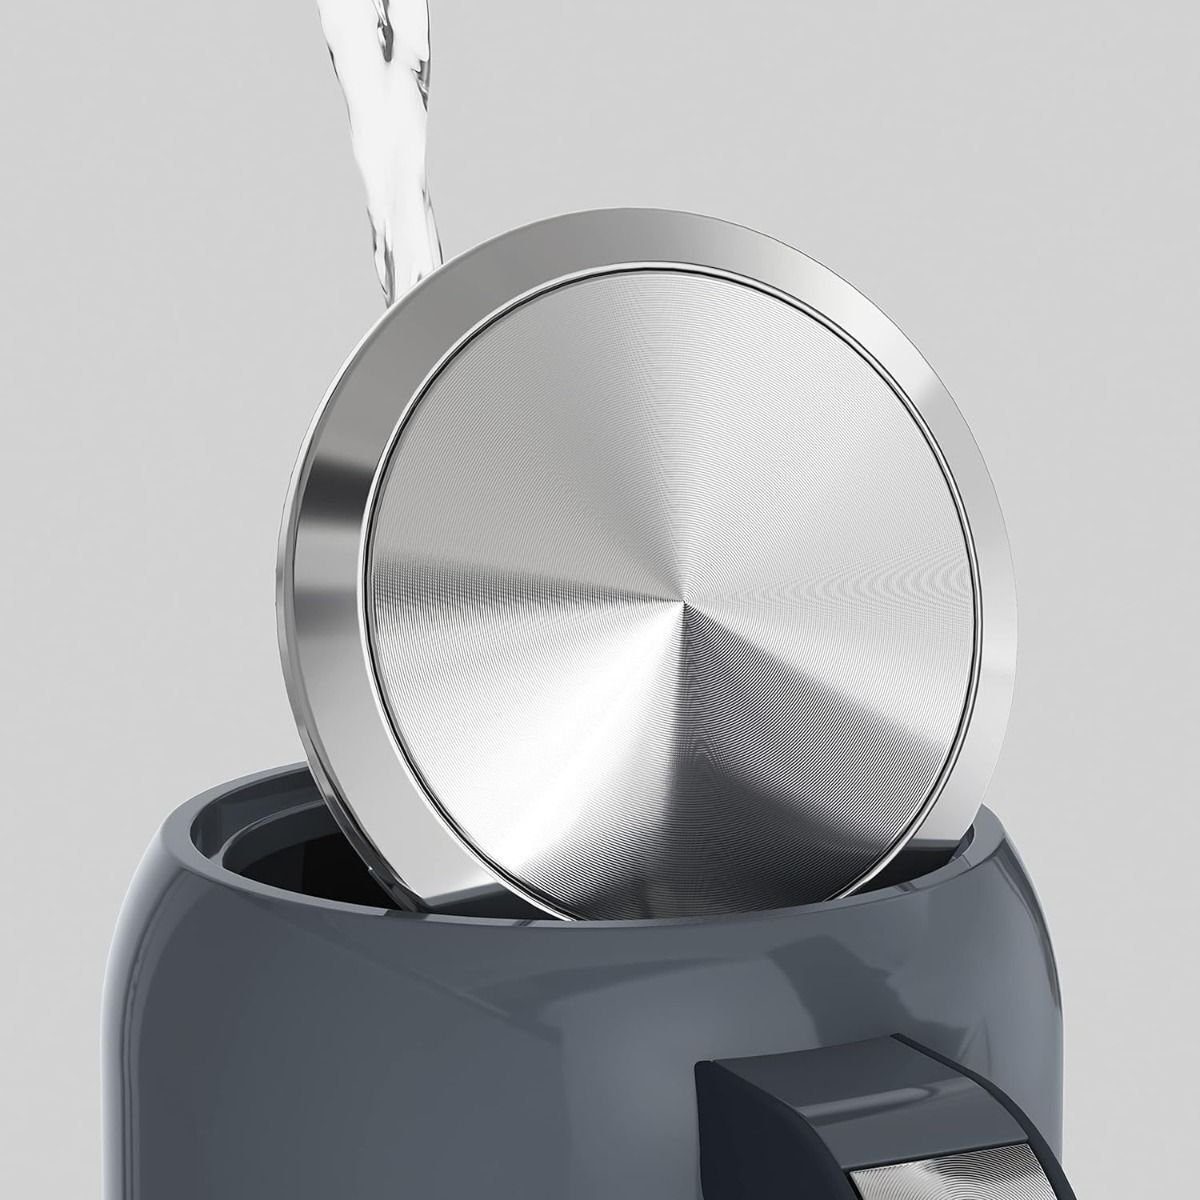 Breville Wasserkocher Elektrischer by Sage 2200,00 Teekocher Kettle Tassen,rutschfeste schnelle Tragbar 1.7L Edelstahl,Thermosicherung,6 W, bis 8 Füße Kochzeiten